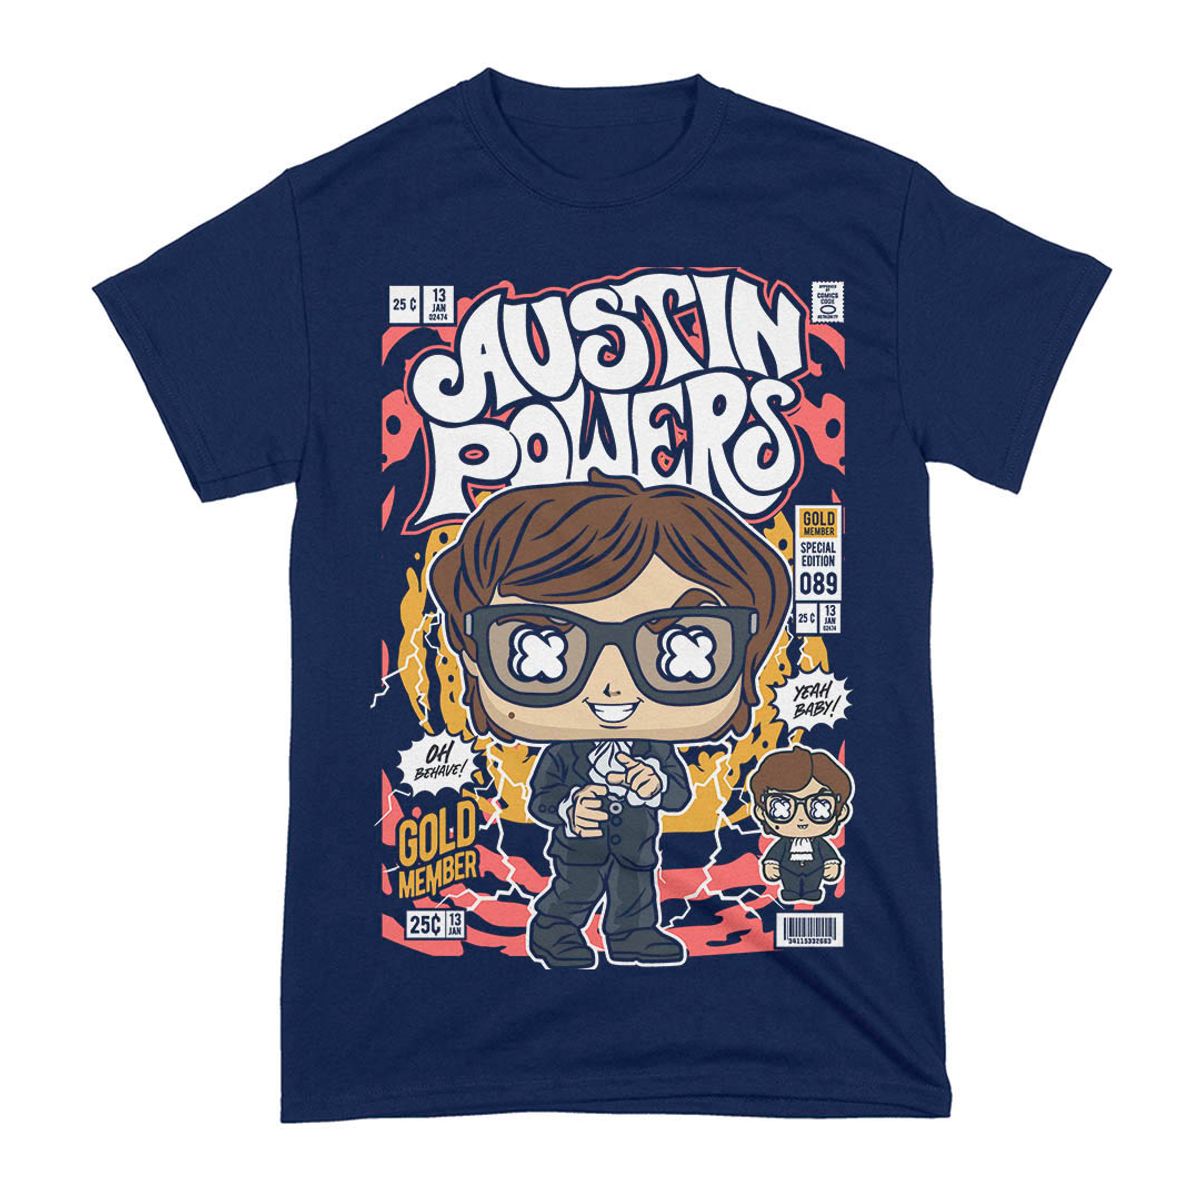 Nome do produto: Camiseta Austin Powers Funko Pop